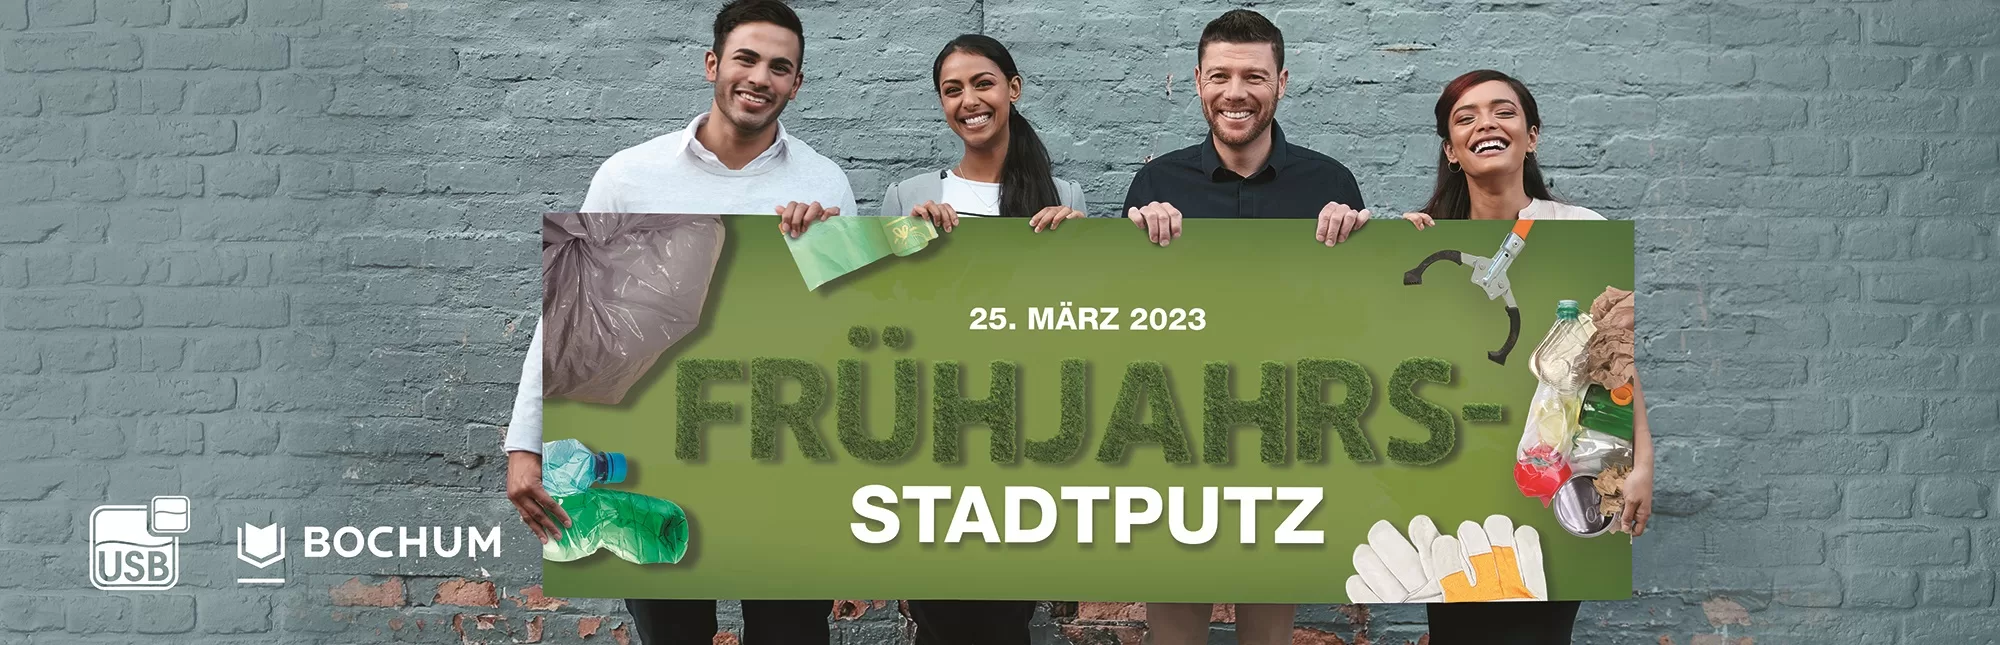 Bochumer Frühjahrs-Stadtputz 2023: Mach mit und hilf, unsere Stadt sauberer zu gestalten!